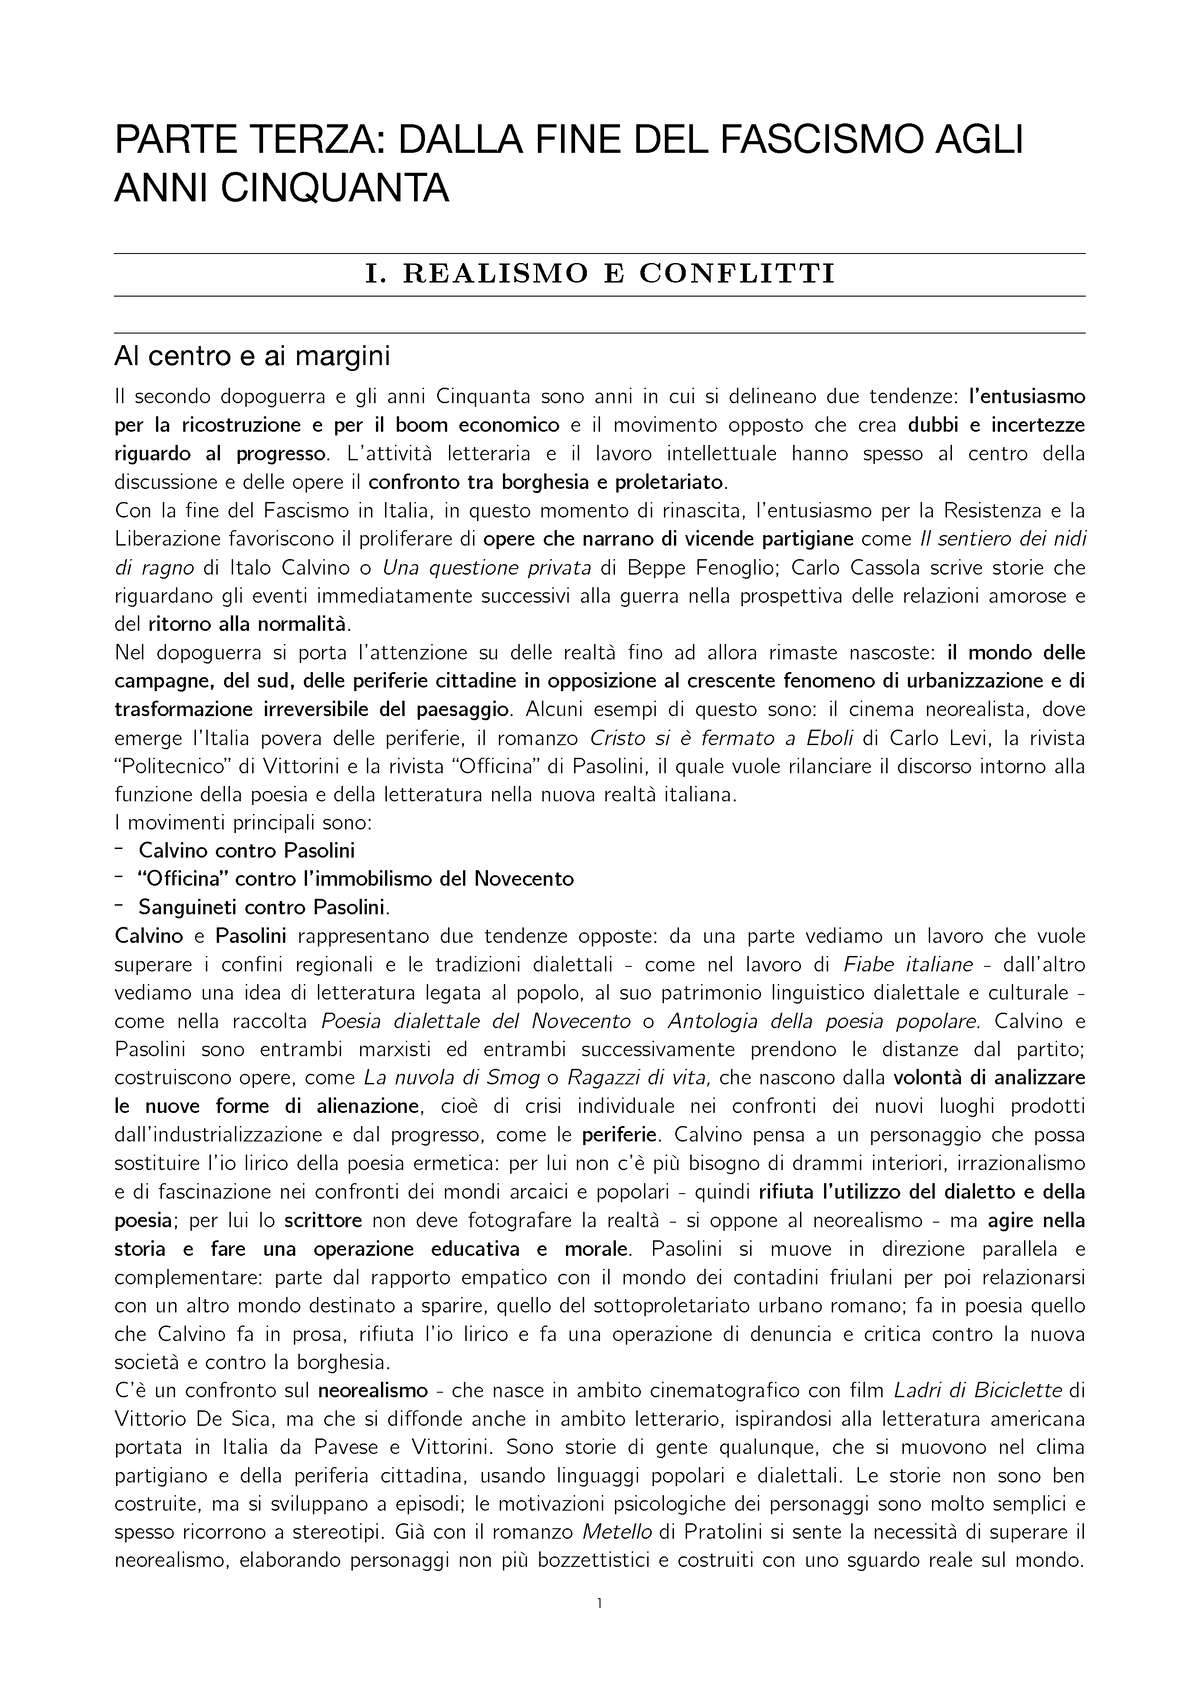 Riassunto manuale Cento Anni di Letteratura Italiana parte III e IV - PARTE  TERZA: DALLA FINE DEL - Studocu